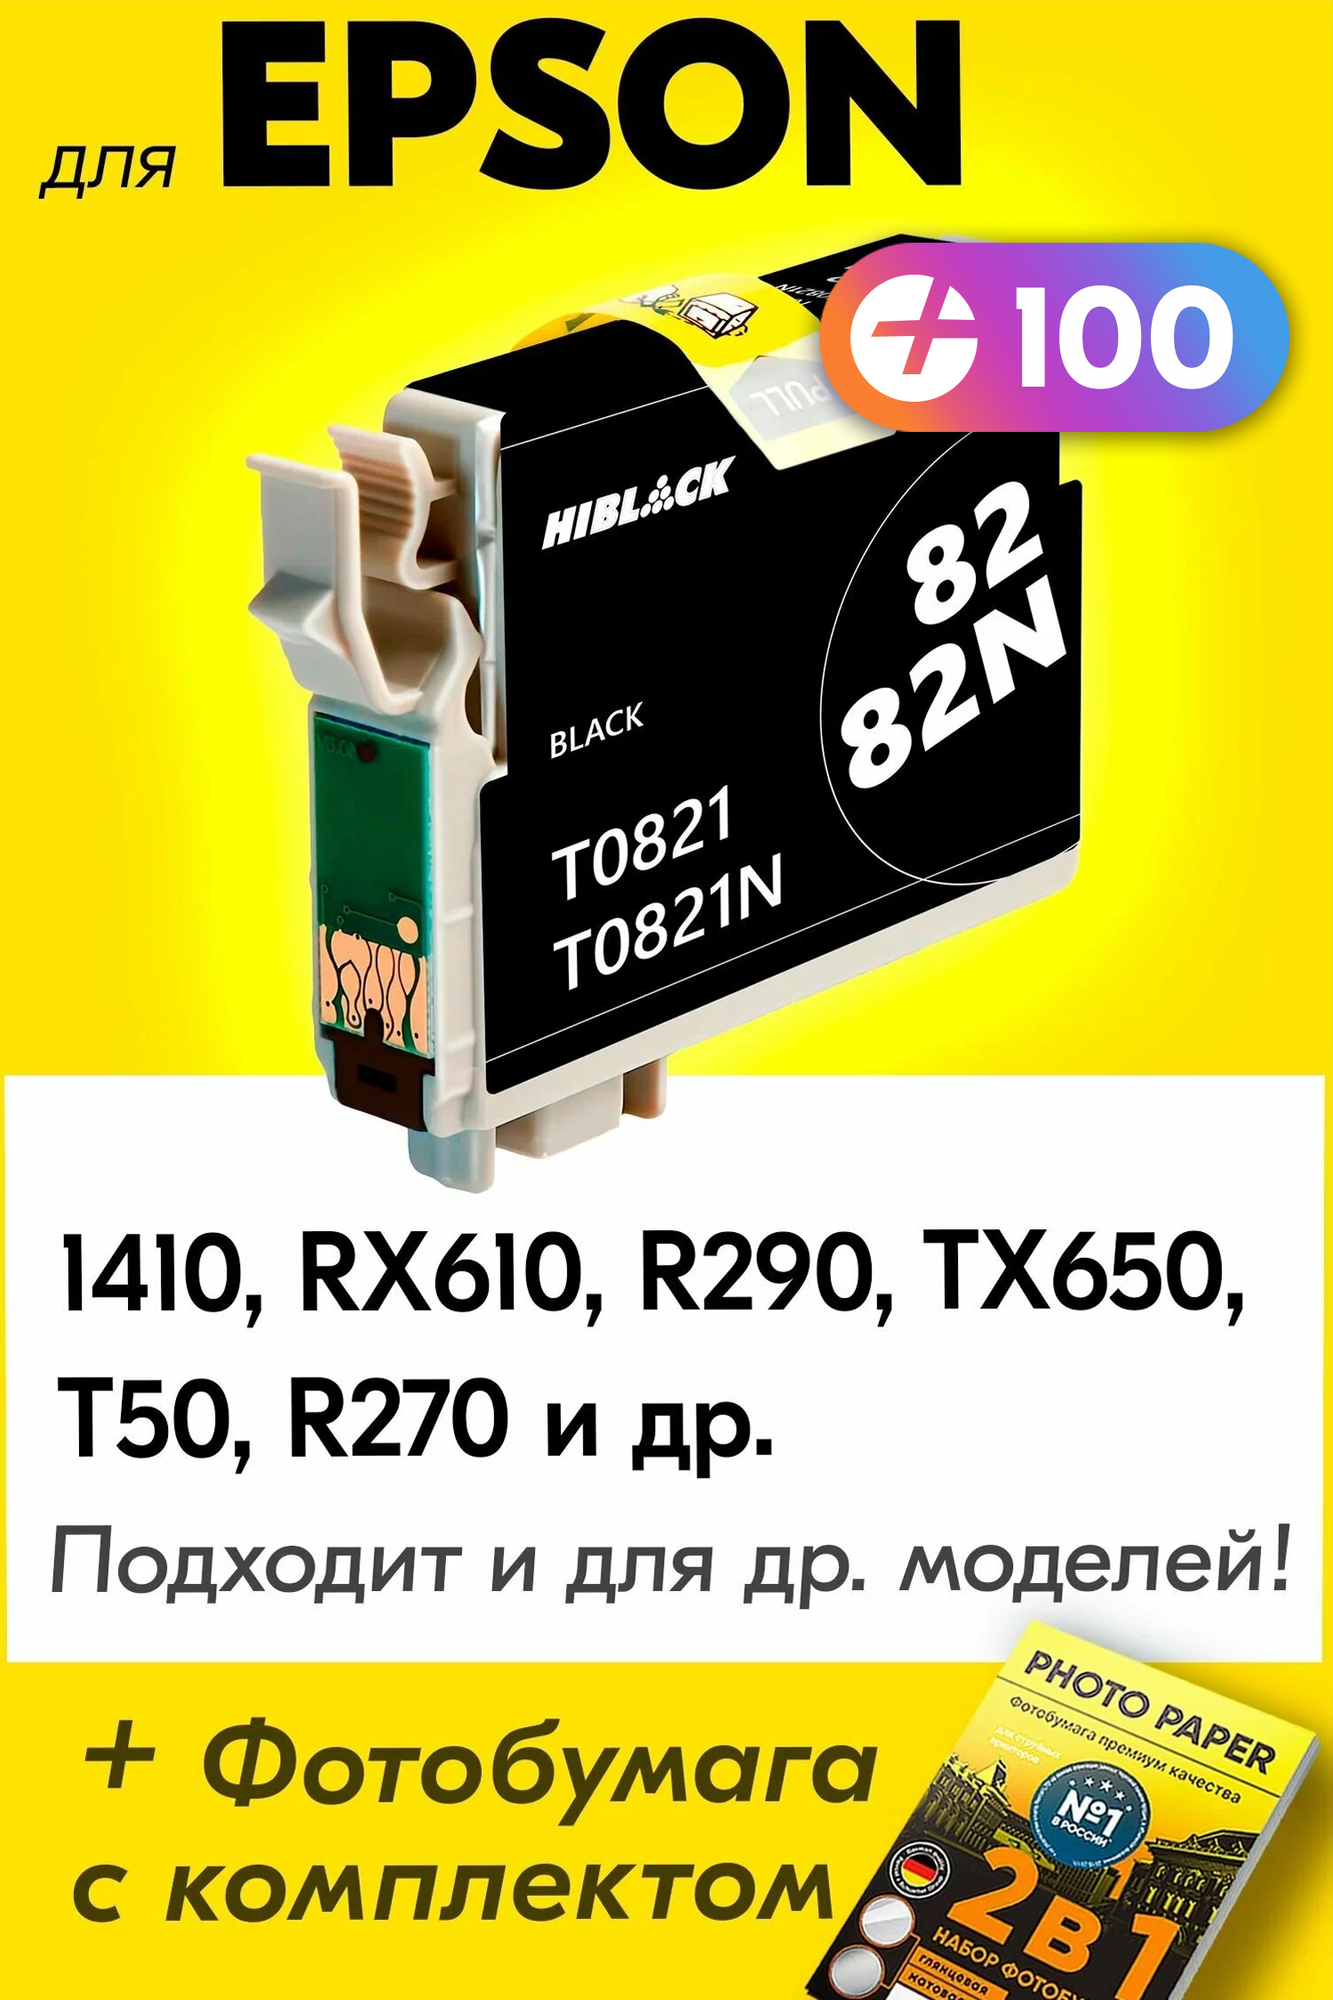 Картридж для Epson T0821, Epson Stylus Photo 1410, RX610, R290, TX650, T50, R270 и др. с чернилами для струйного принтера, Черный (Black), 1 шт.